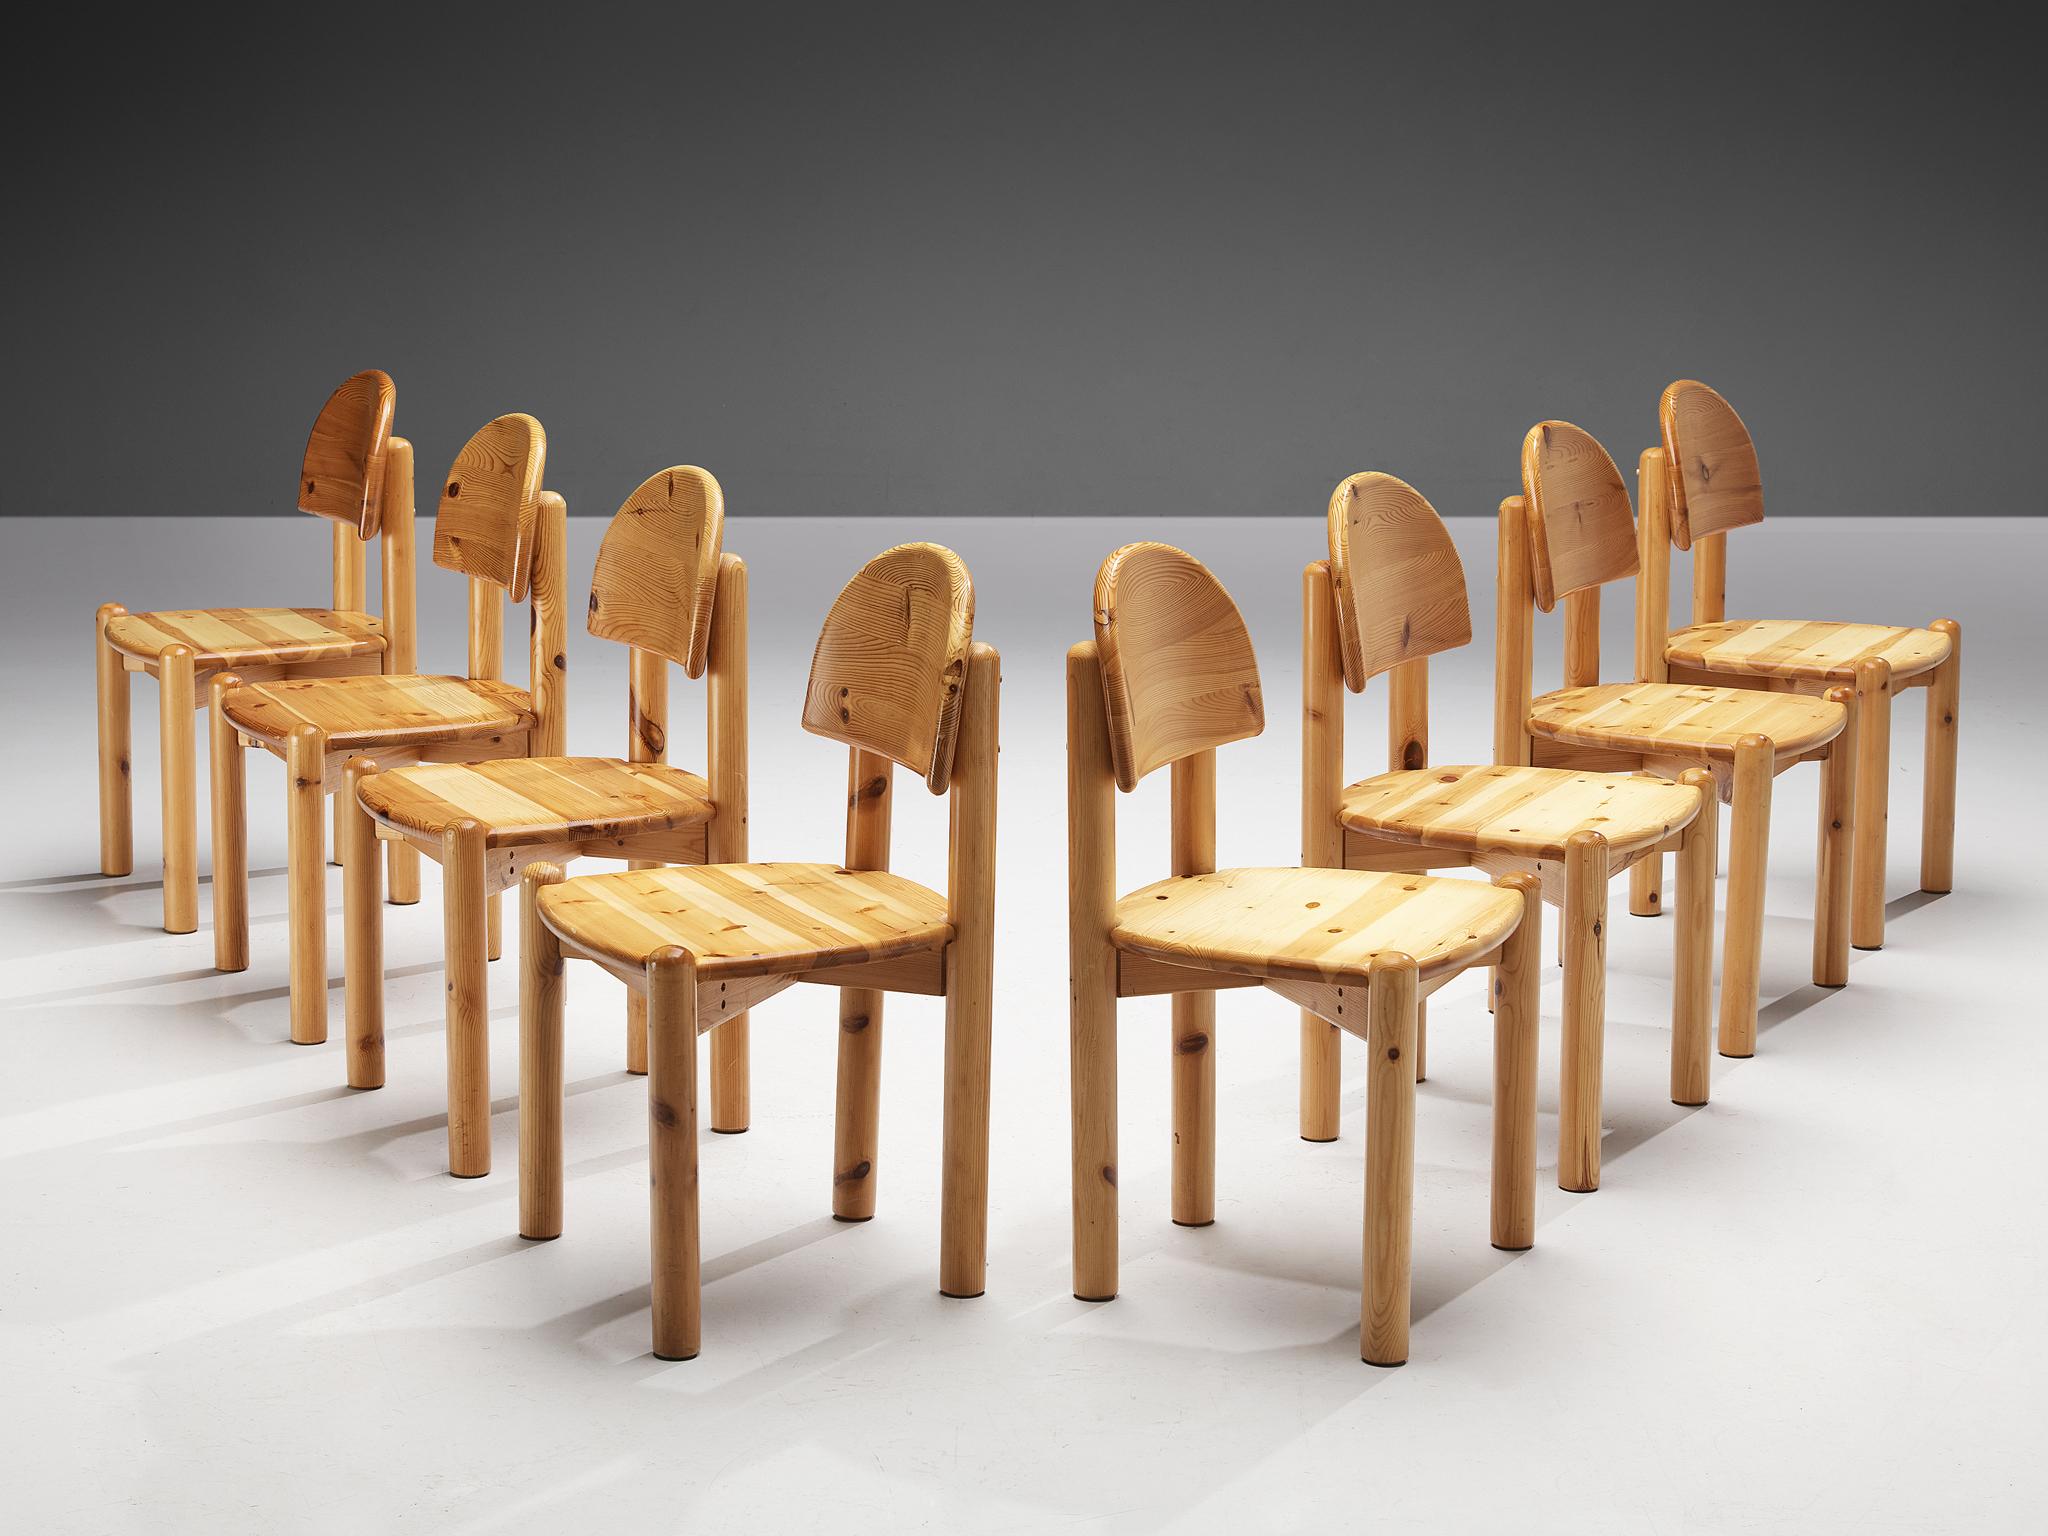 Chaises de salle à manger, pin, Danemark années 1970. 

De belles chaises de salle à manger organiques et naturelles en pin massif. Un design simpliste avec une assise ronde et une attention pour l'expression naturelle et le grain du bois. Ces